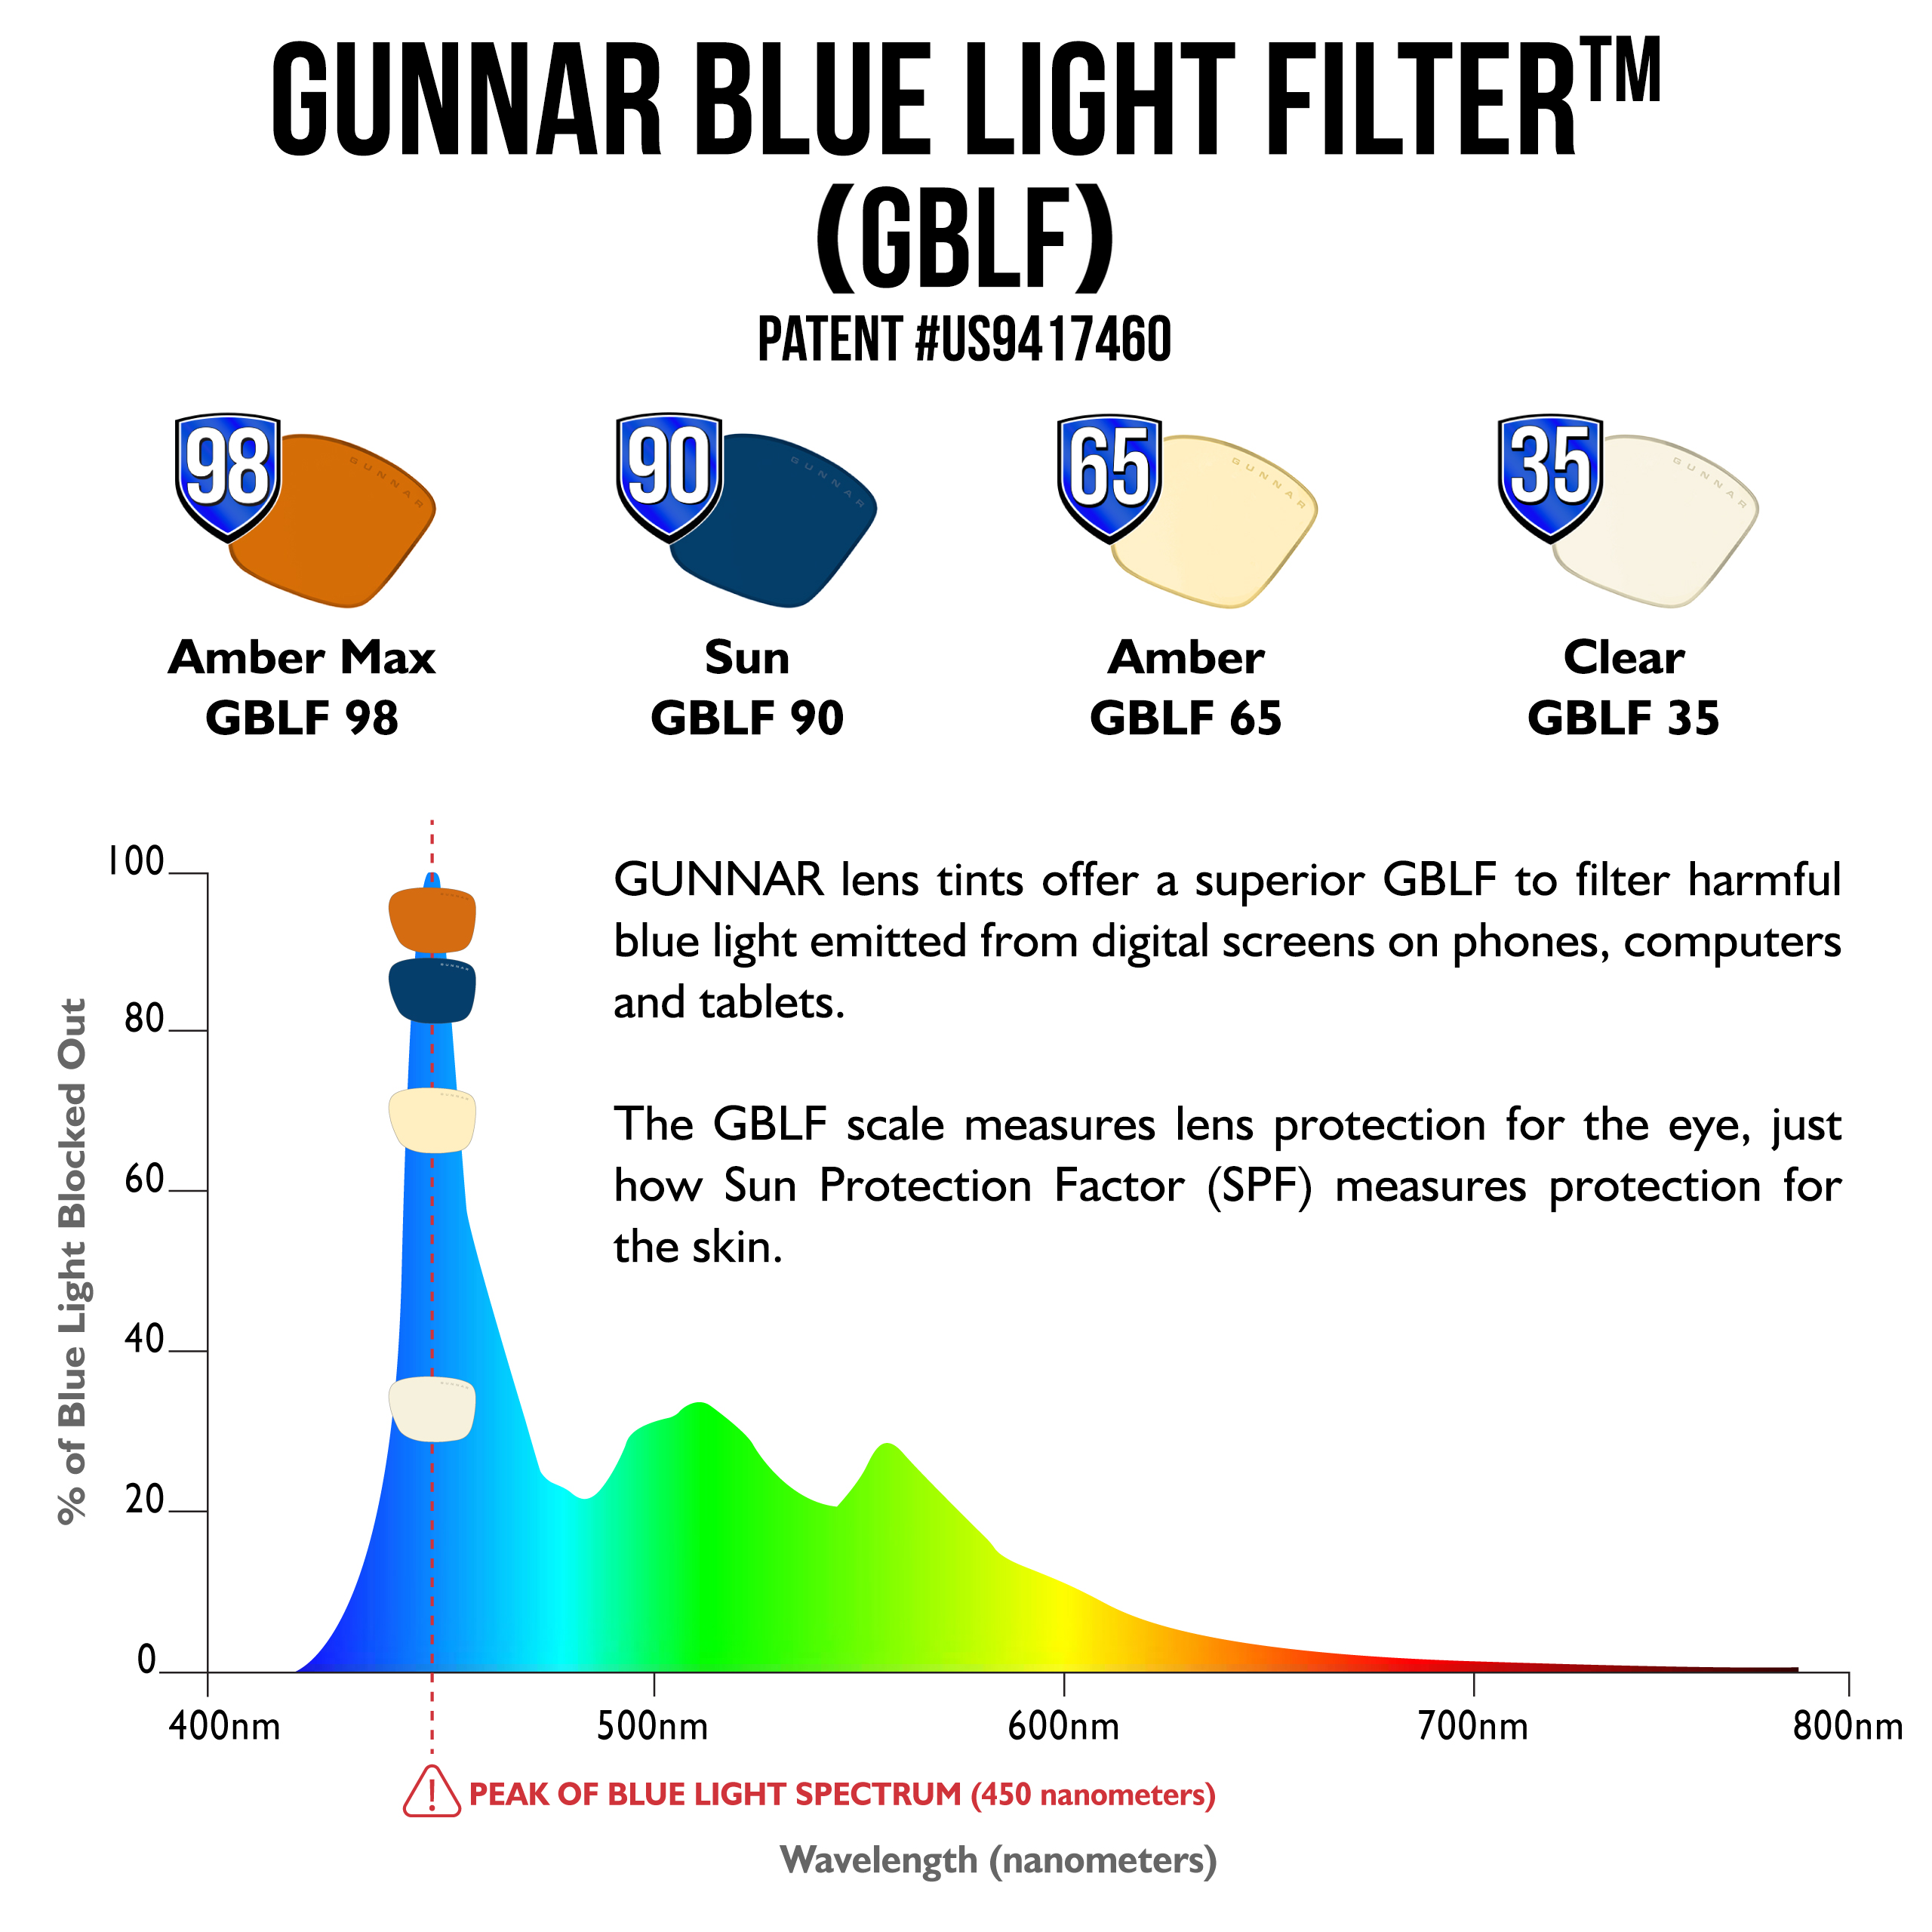 GUNNAR Enigma, Onyx Rahmen, Clear Premium, Tönung, UV-Schutz, Blaulichtfilter, Brille Gaming